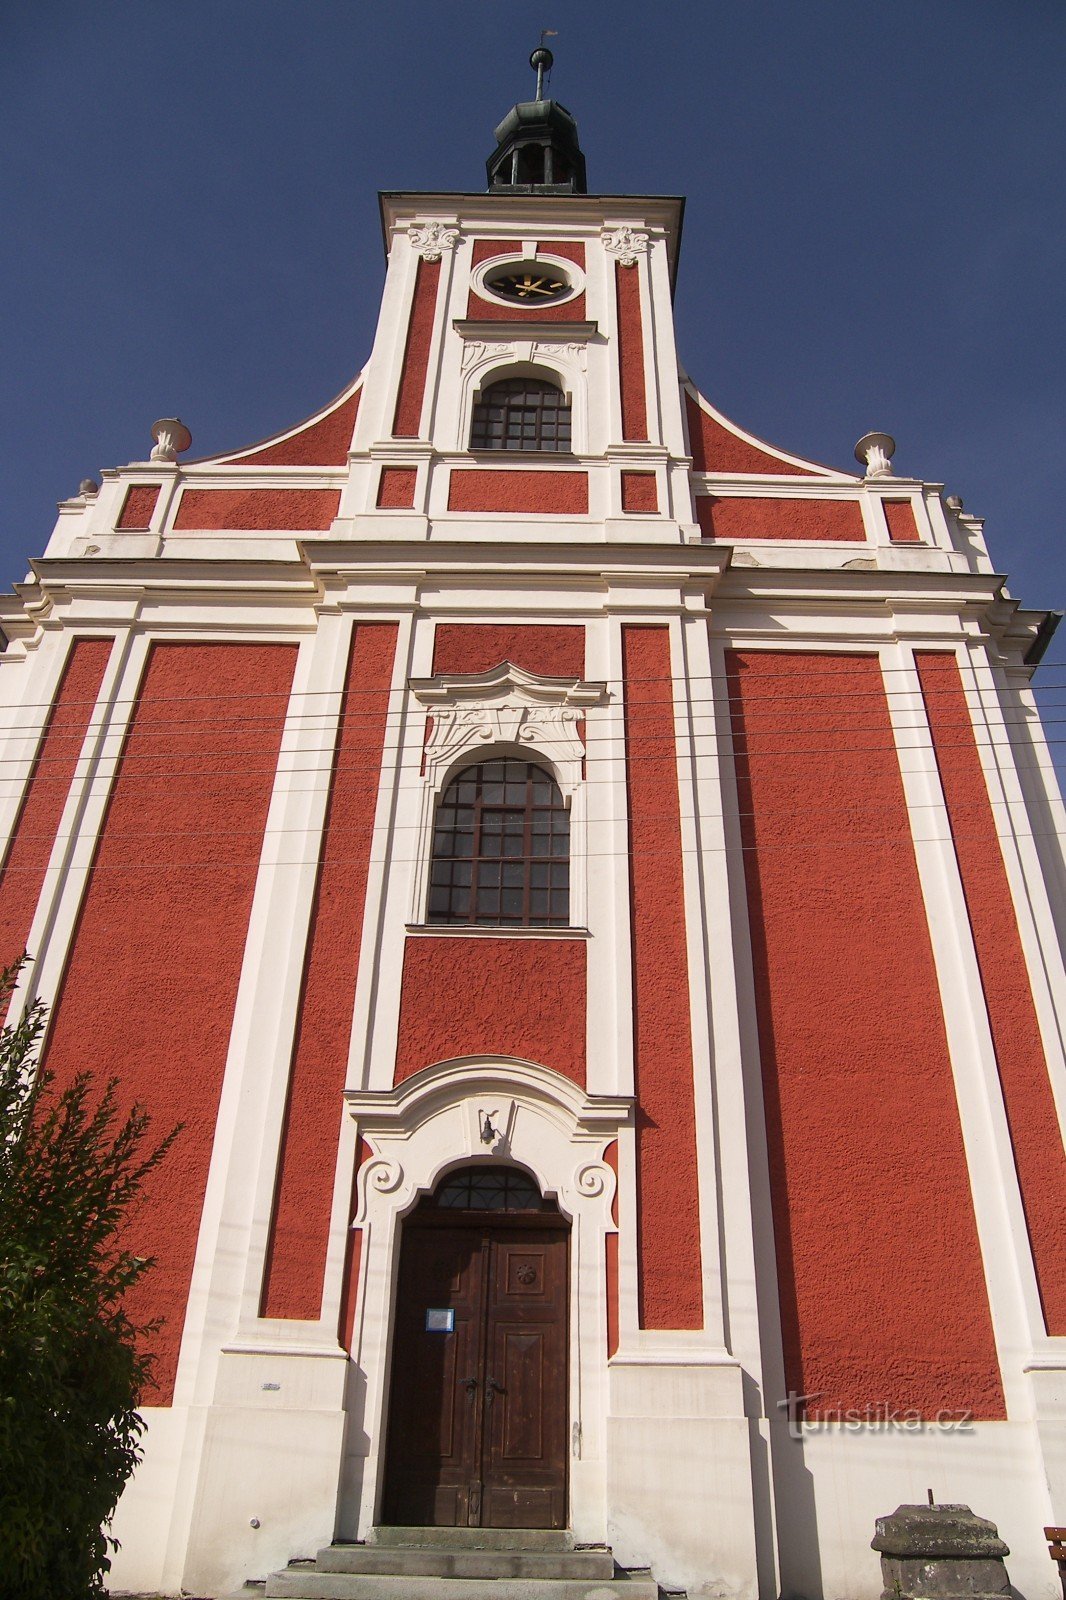 LICHNOV-ST. SAINT NICHOLAS